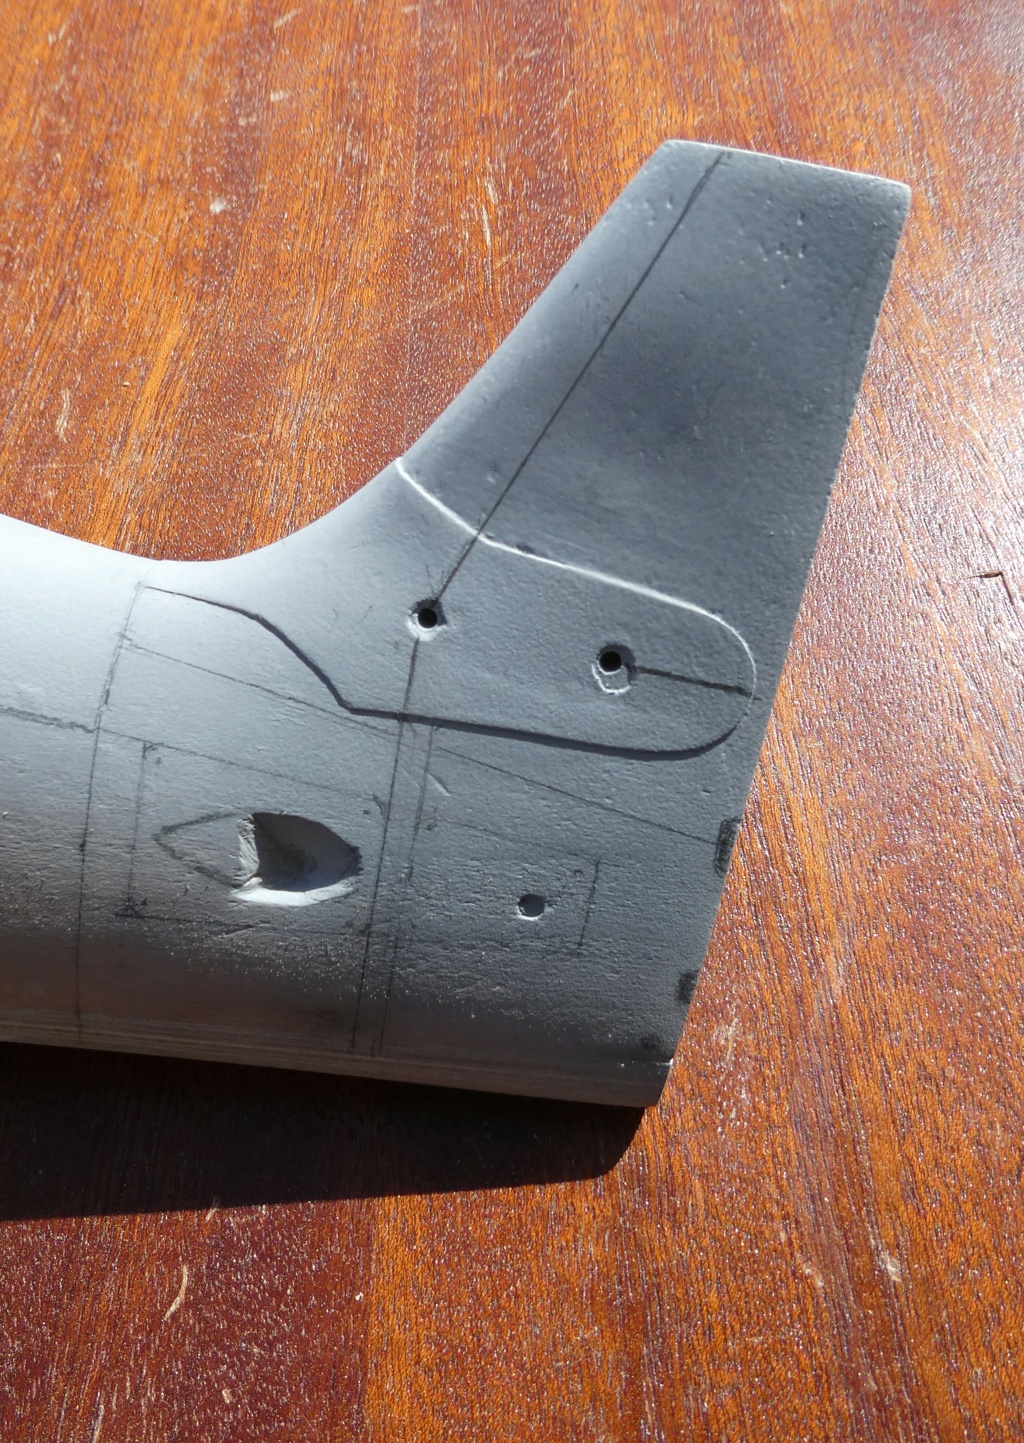 Morane-Saulnier MS.475 Vanneau au 1/16 scratch intégral en bois massif sculpté : fuselage arrière et empennage - Page 6 12220